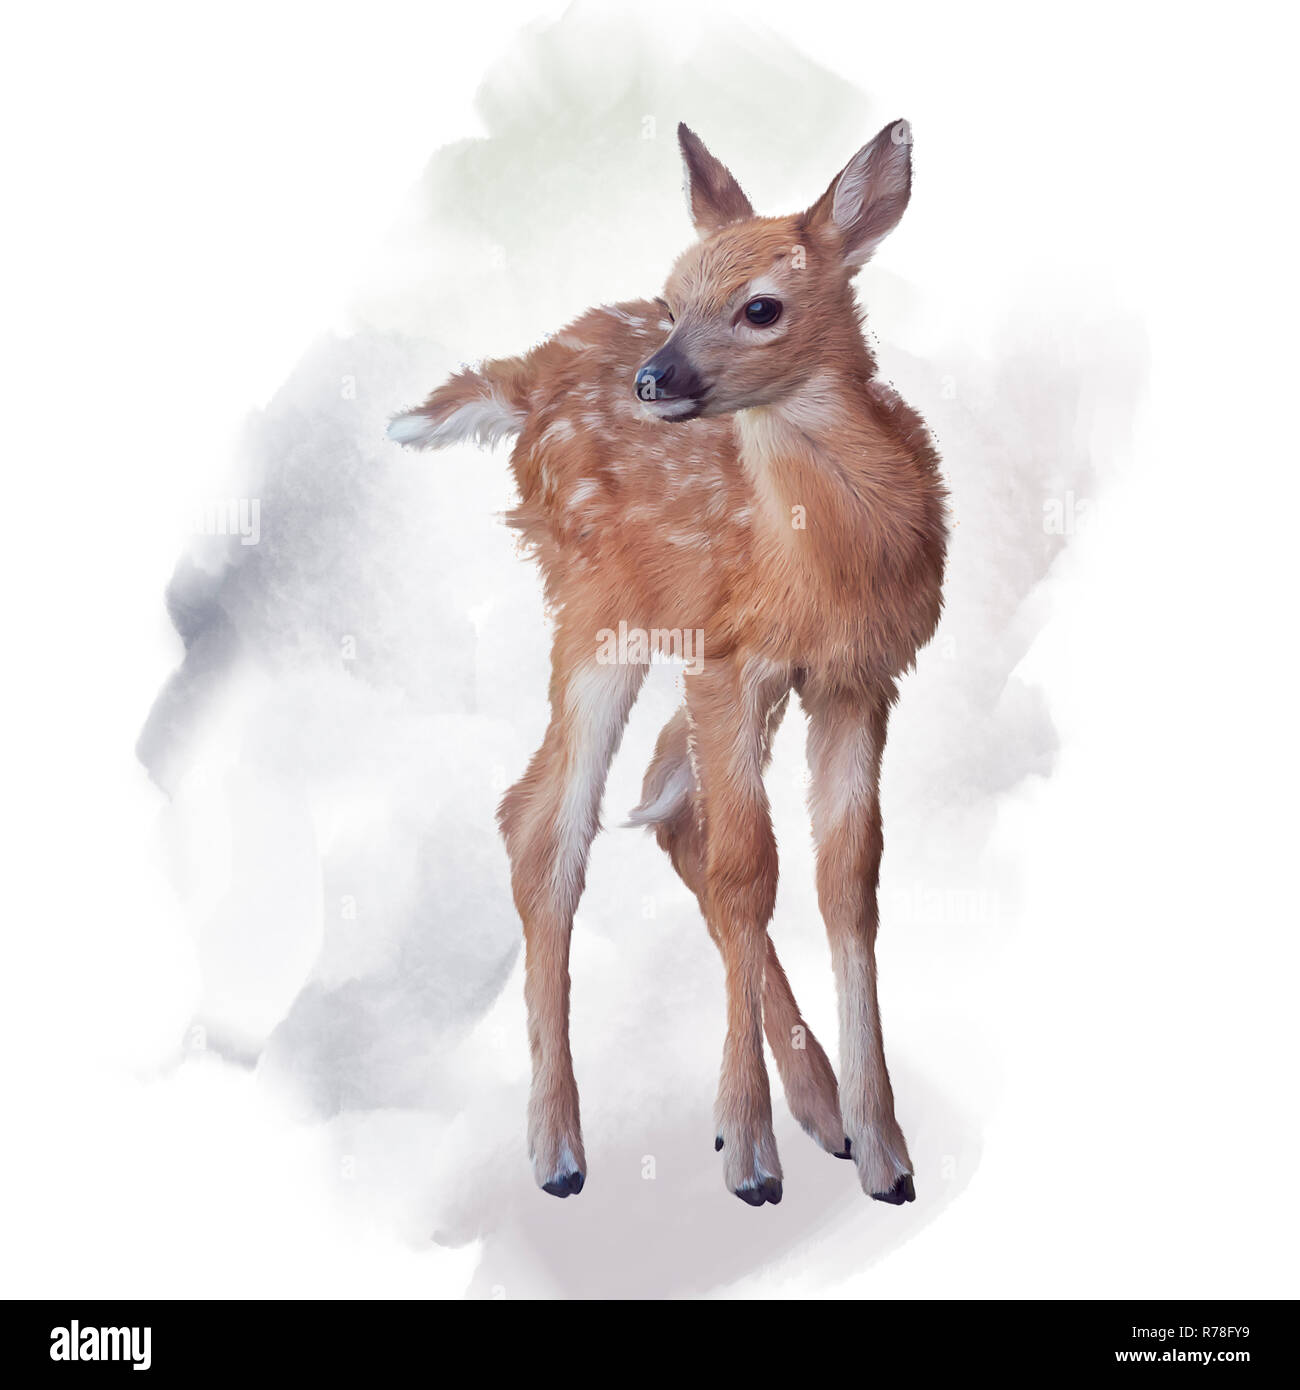 Deer Logo Fawn Logo Pastel Watercolor Logo Rustic Logo -  Hong